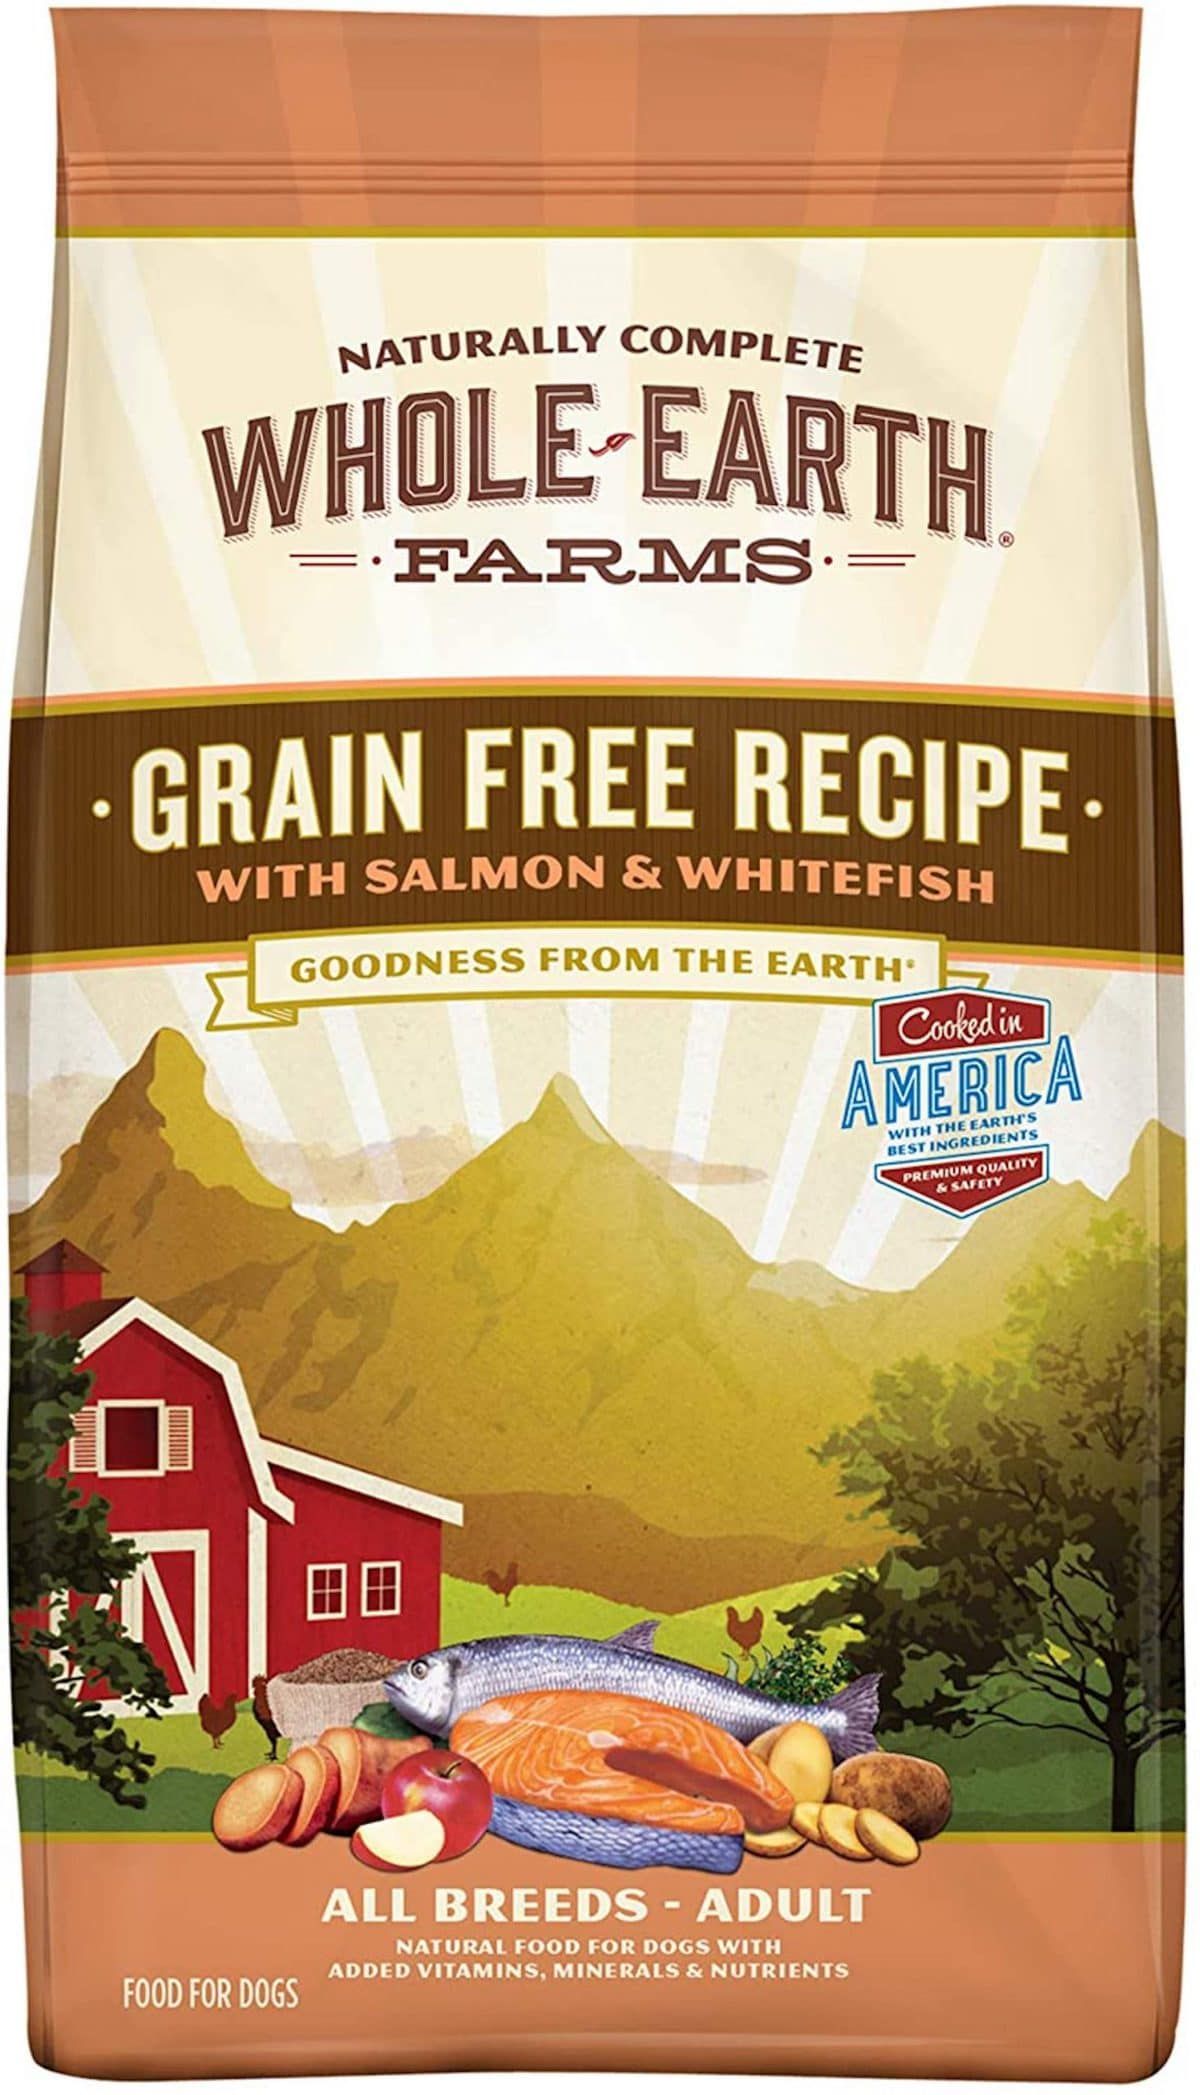 „Whole Earth Farms“ receptas be grūdų šunų maistui